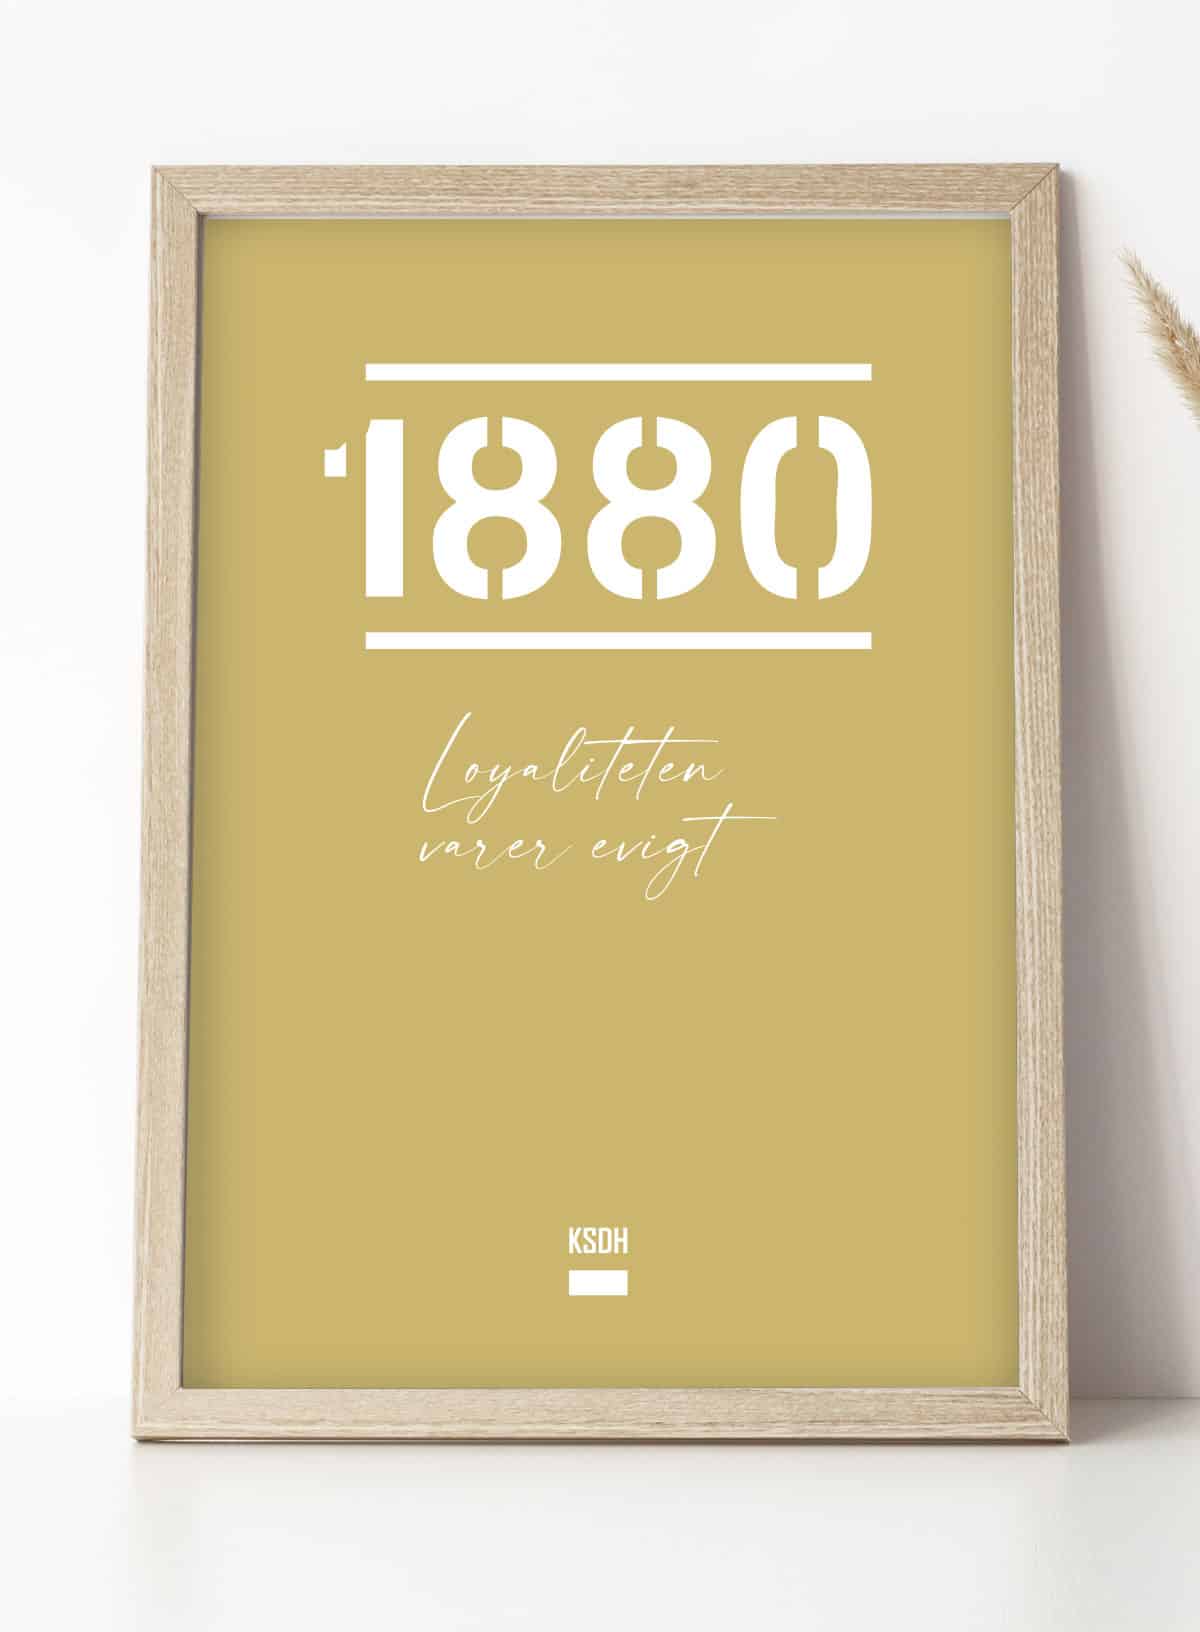 Se AGF-plakat - 1880 - Loyaliteten varer evigt - 70 x 100 cm - Kr. 349,- hos Detbedstehjem.dk